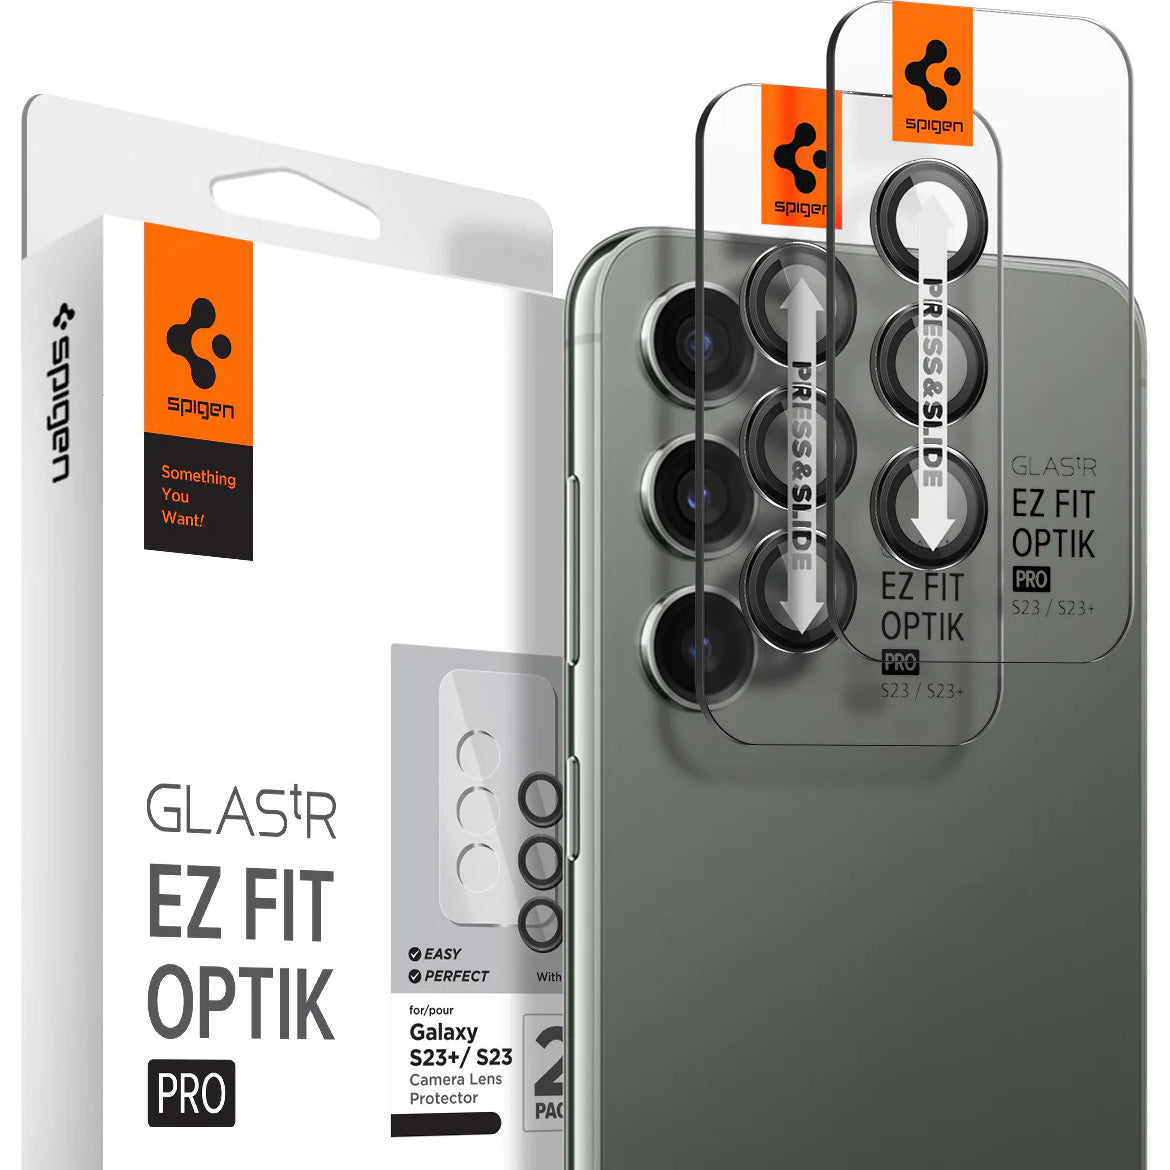 Glas für die Kamera Spigen Glas.tR Ez Fit Optik Pro 2-Pack für Galaxy S24 / S23 / S23 Plus, Schwarz